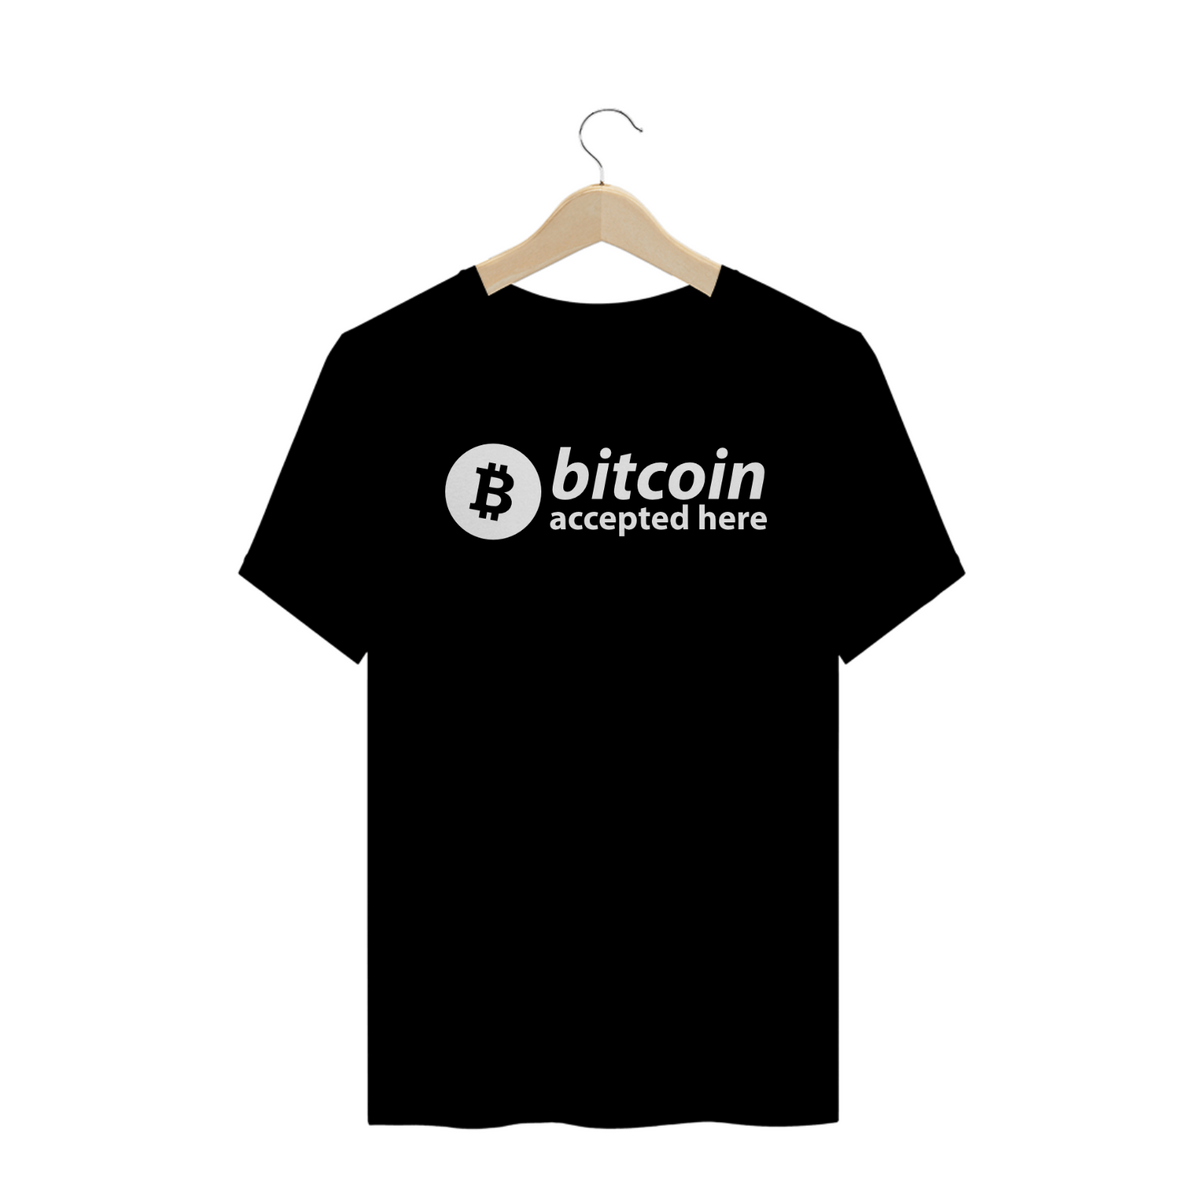 Nome do produto: Criptos - Camisa Bitcoin Accepted Here